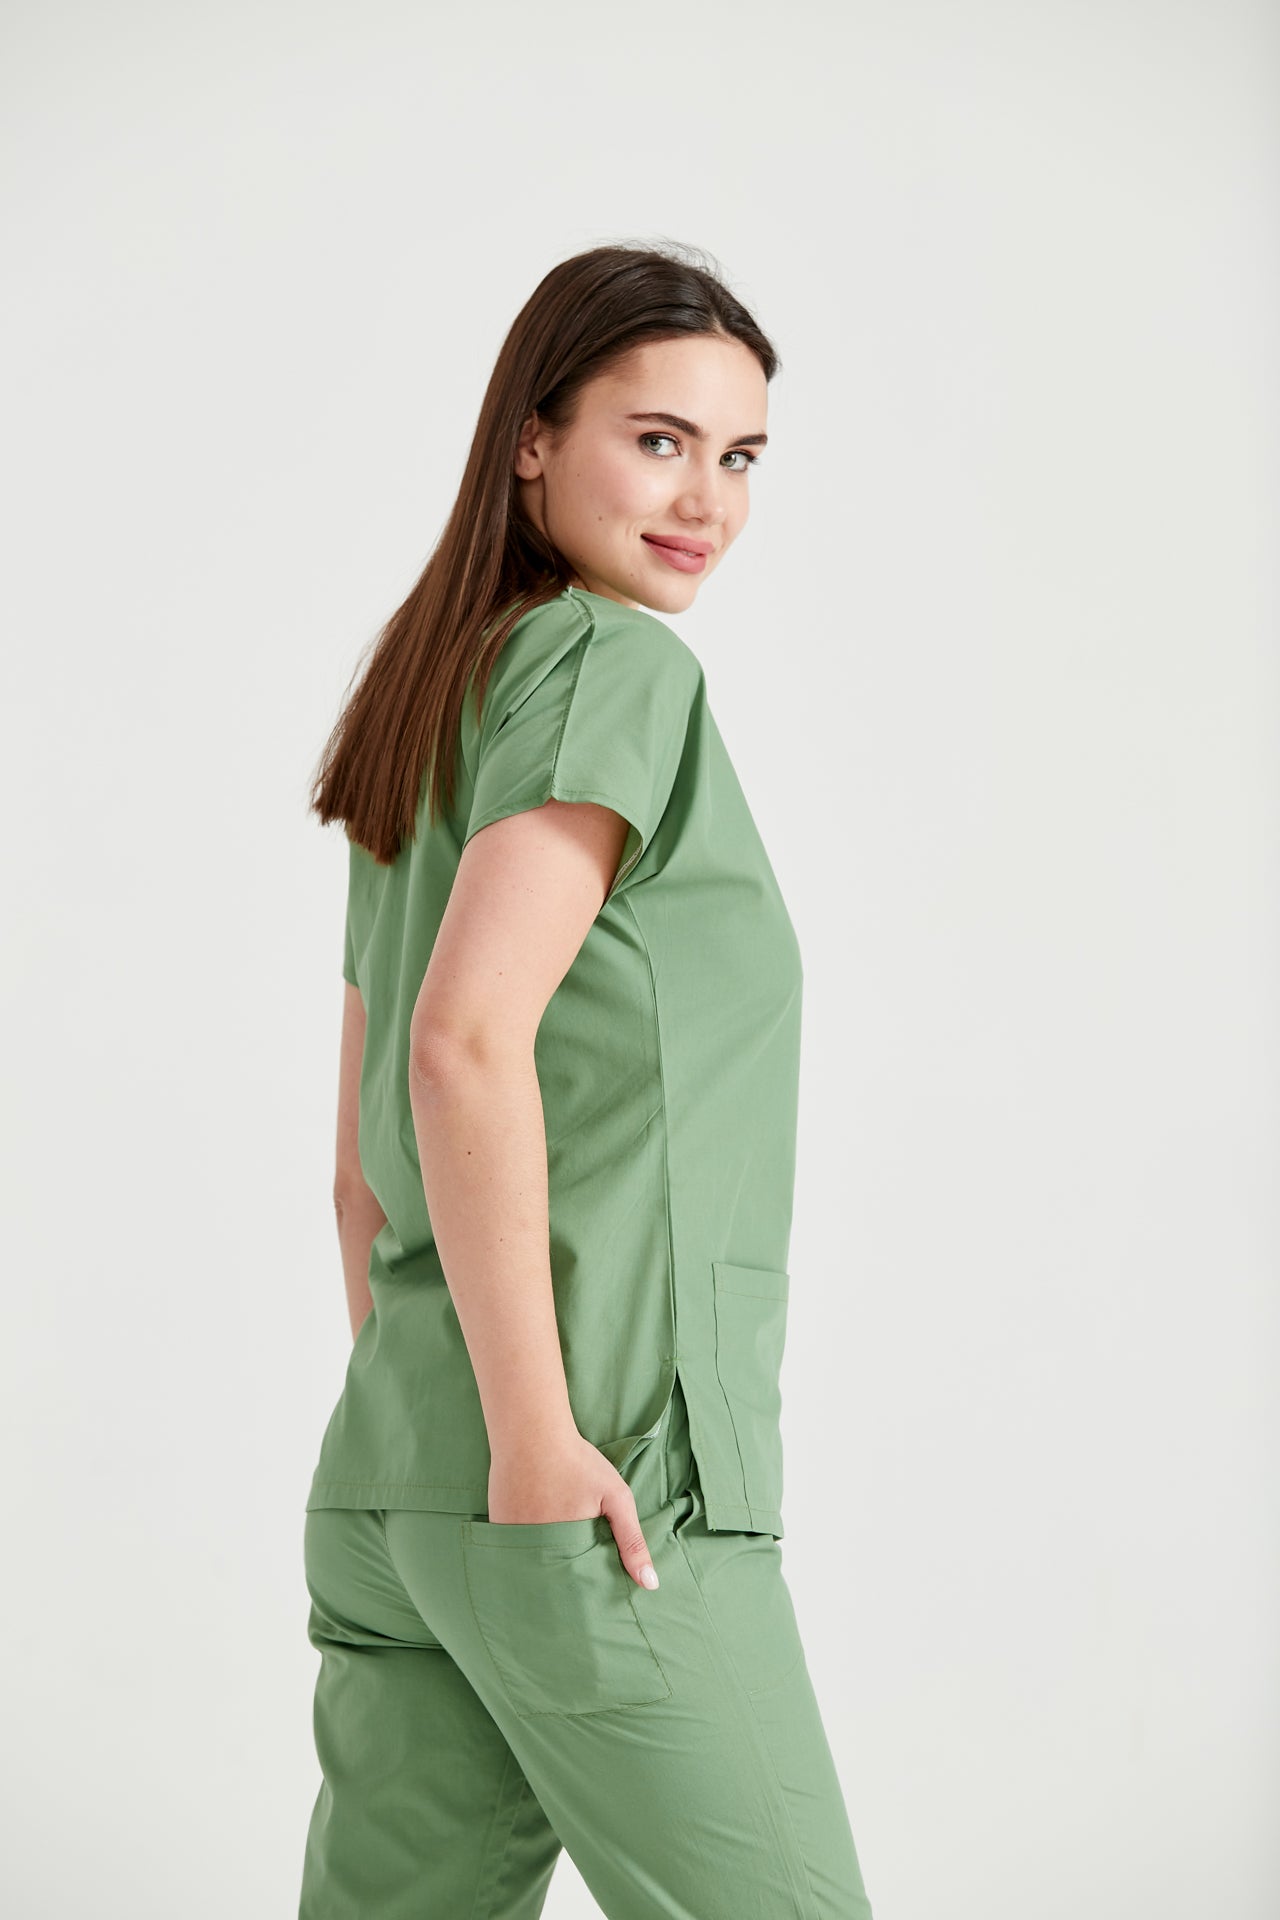 Asistenta medicala imbracata in costum medical verde fistic Pistaccio, vedere din semi-profil